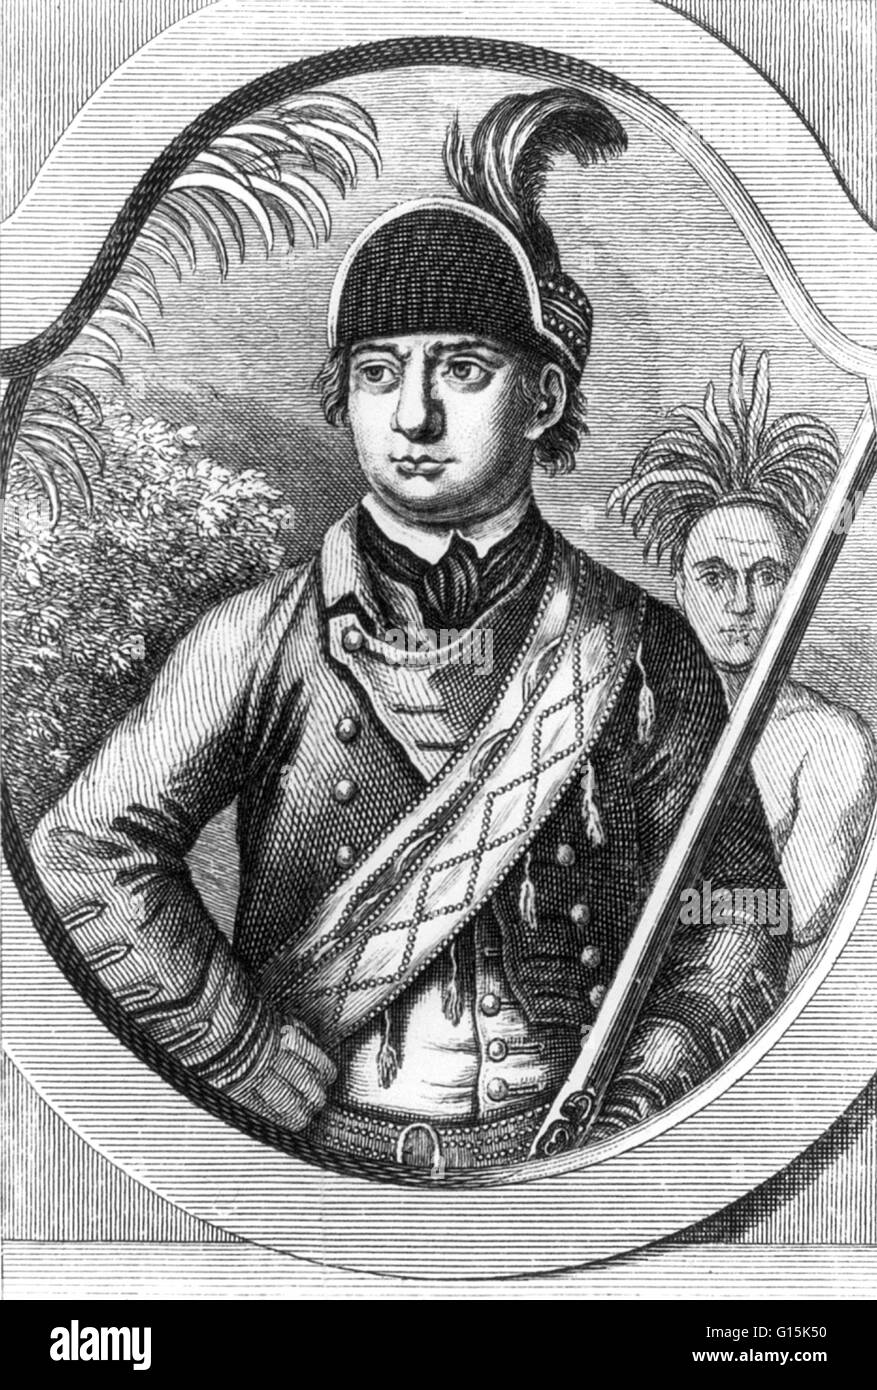 Ritratto di Robert Rogers (1731-1795), un frontiersman coloniale che ha servito nella guerra di indiano e francese e la guerra rivoluzionaria americana. Durante l'ex ha sollevato e comandato una milizia coloniale conosciuta come Rogers' Rangers. Foto Stock